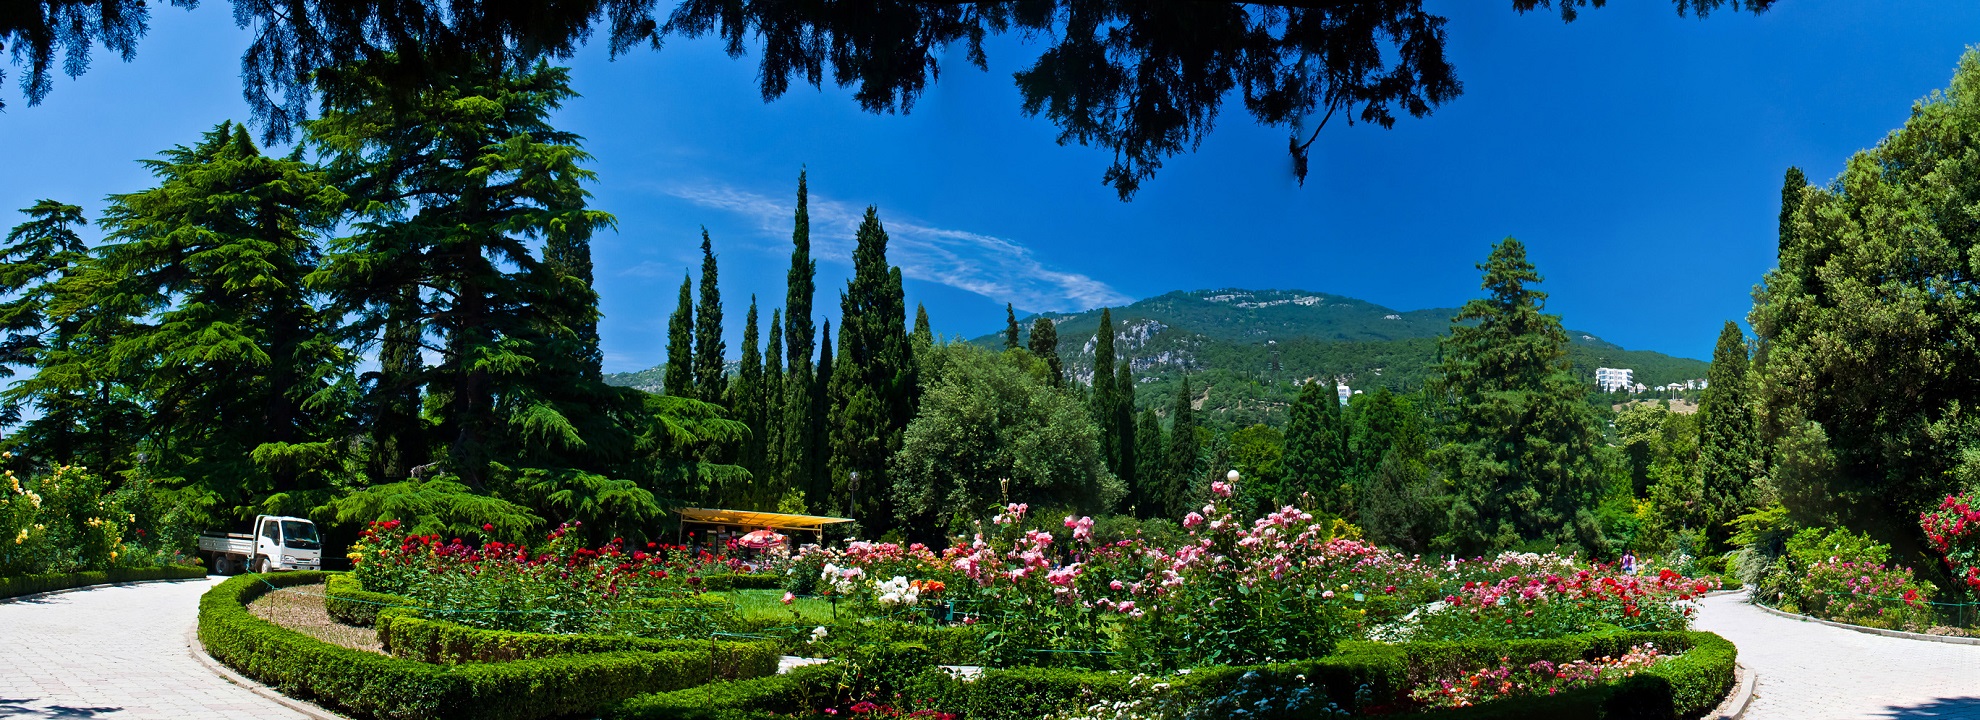 Никитский ботанический сад панорама